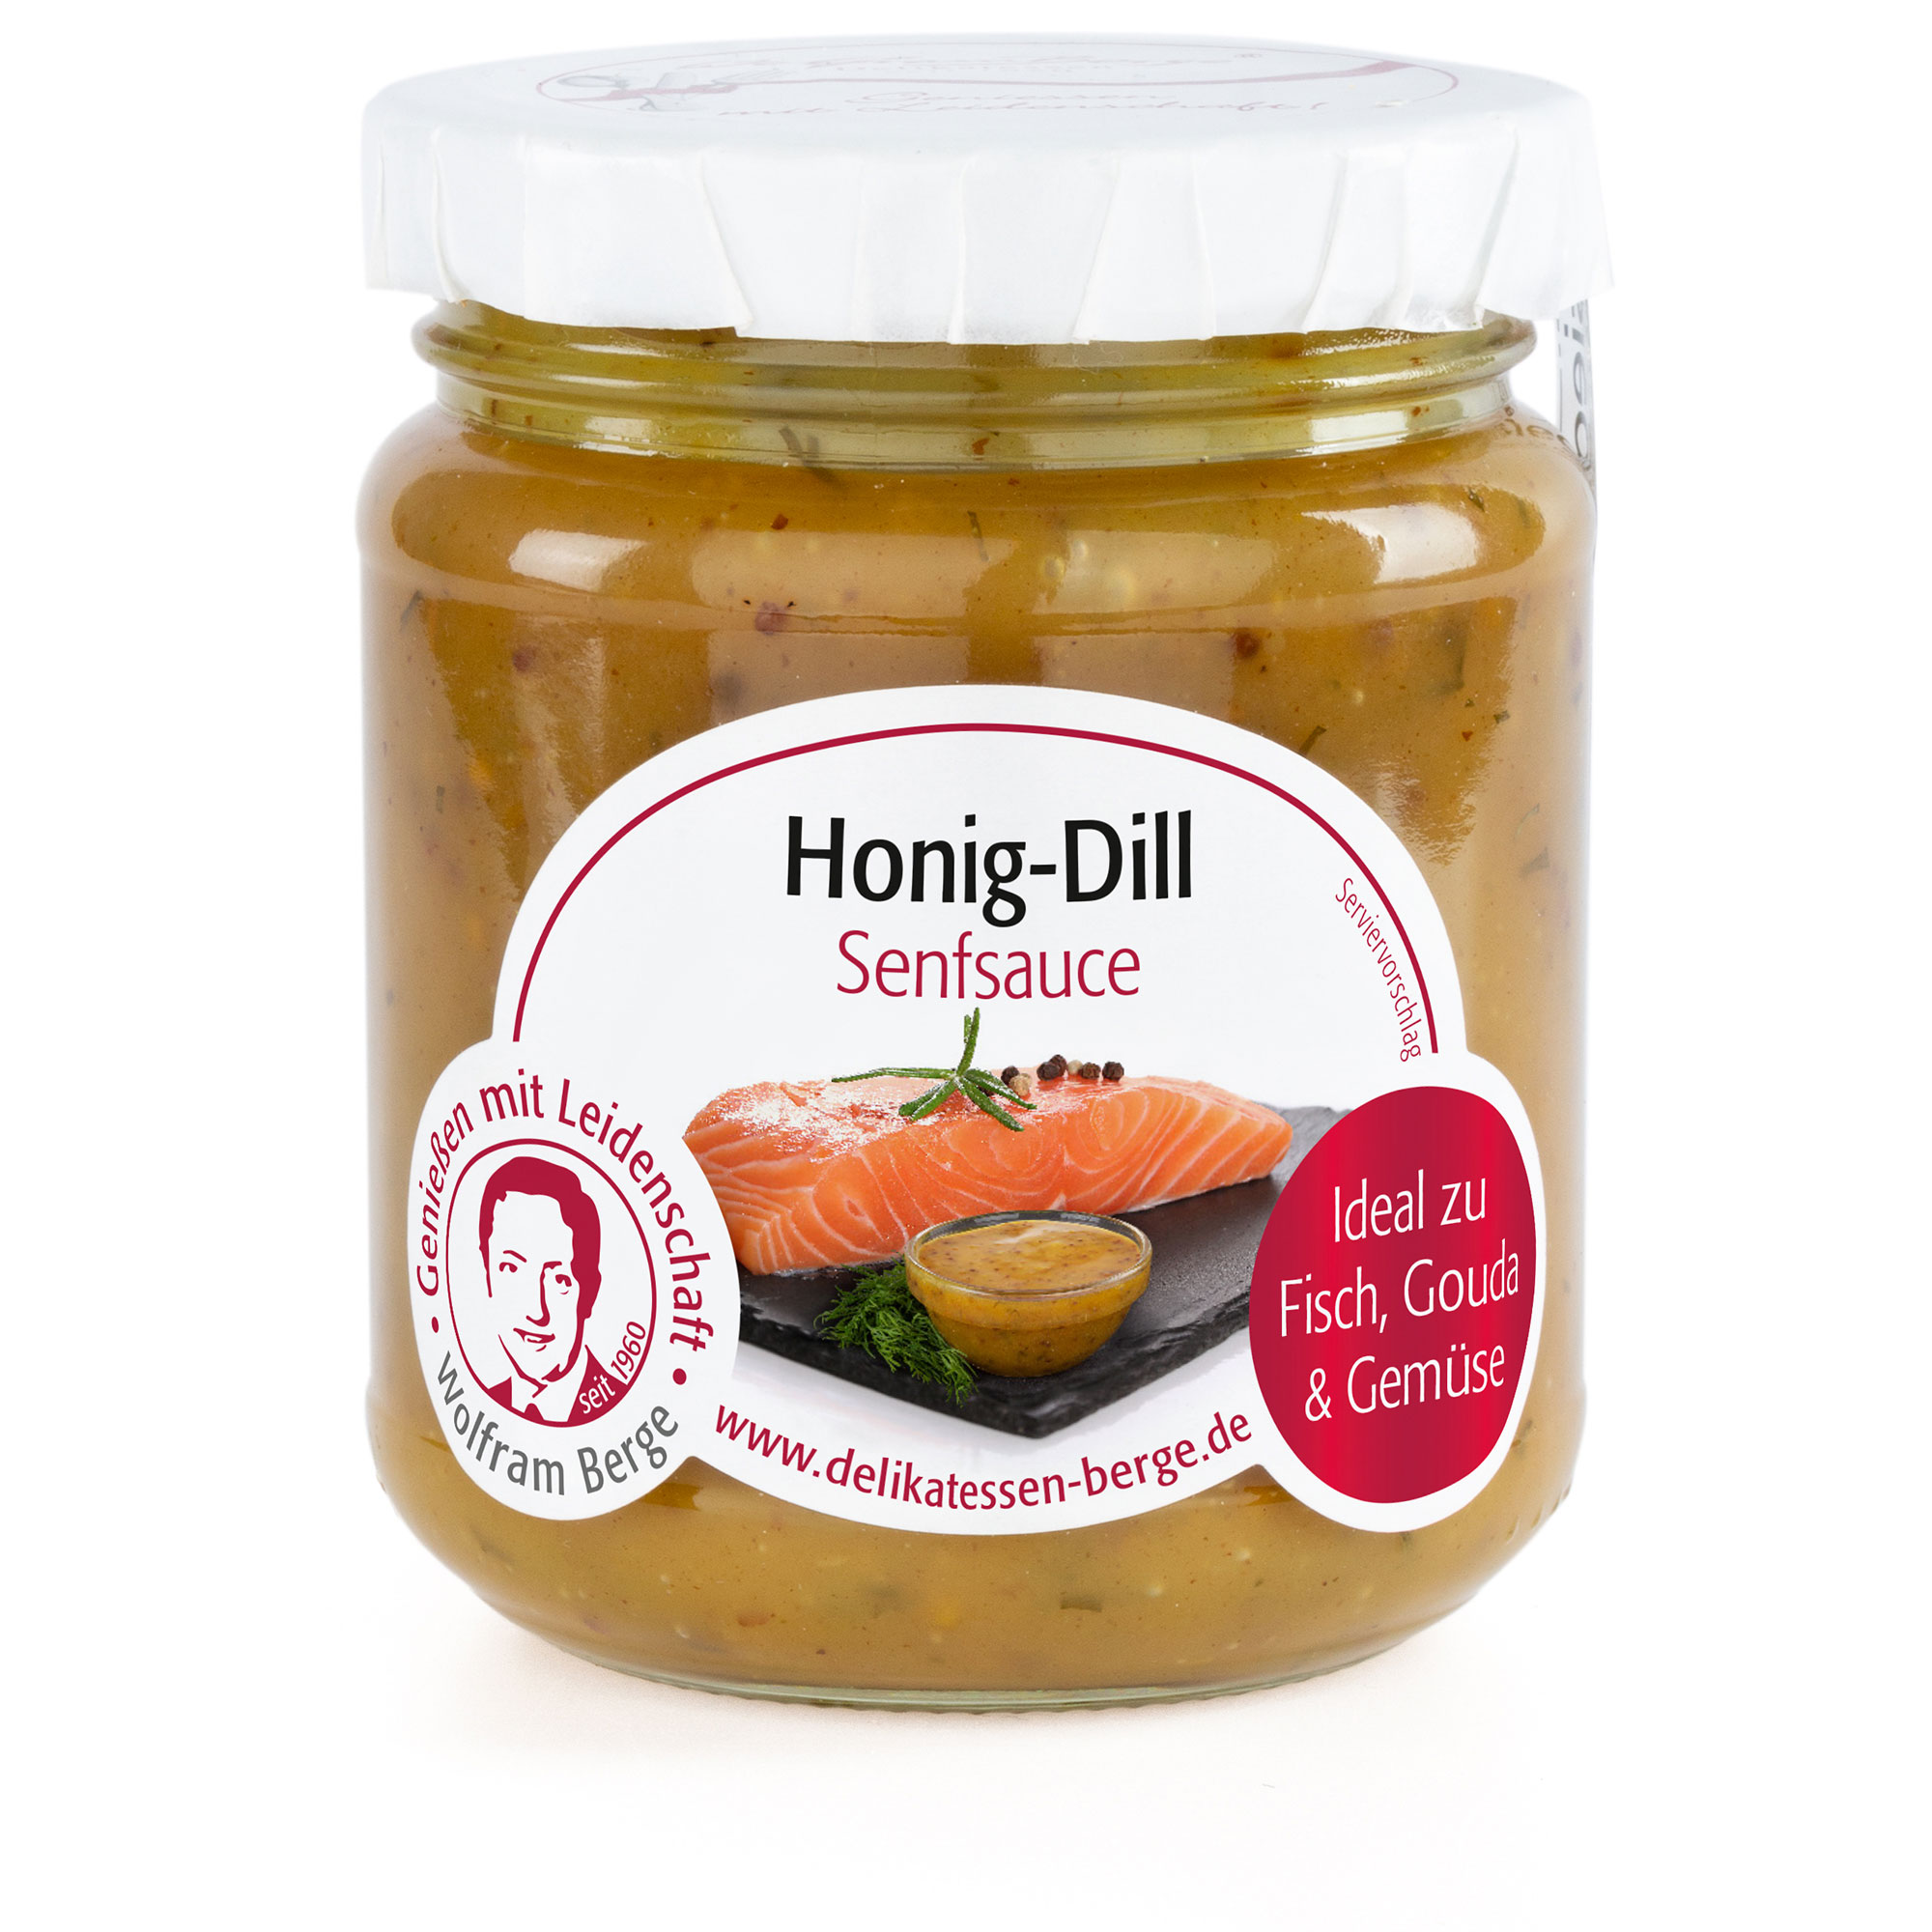 Honig-Dill Senfsauce